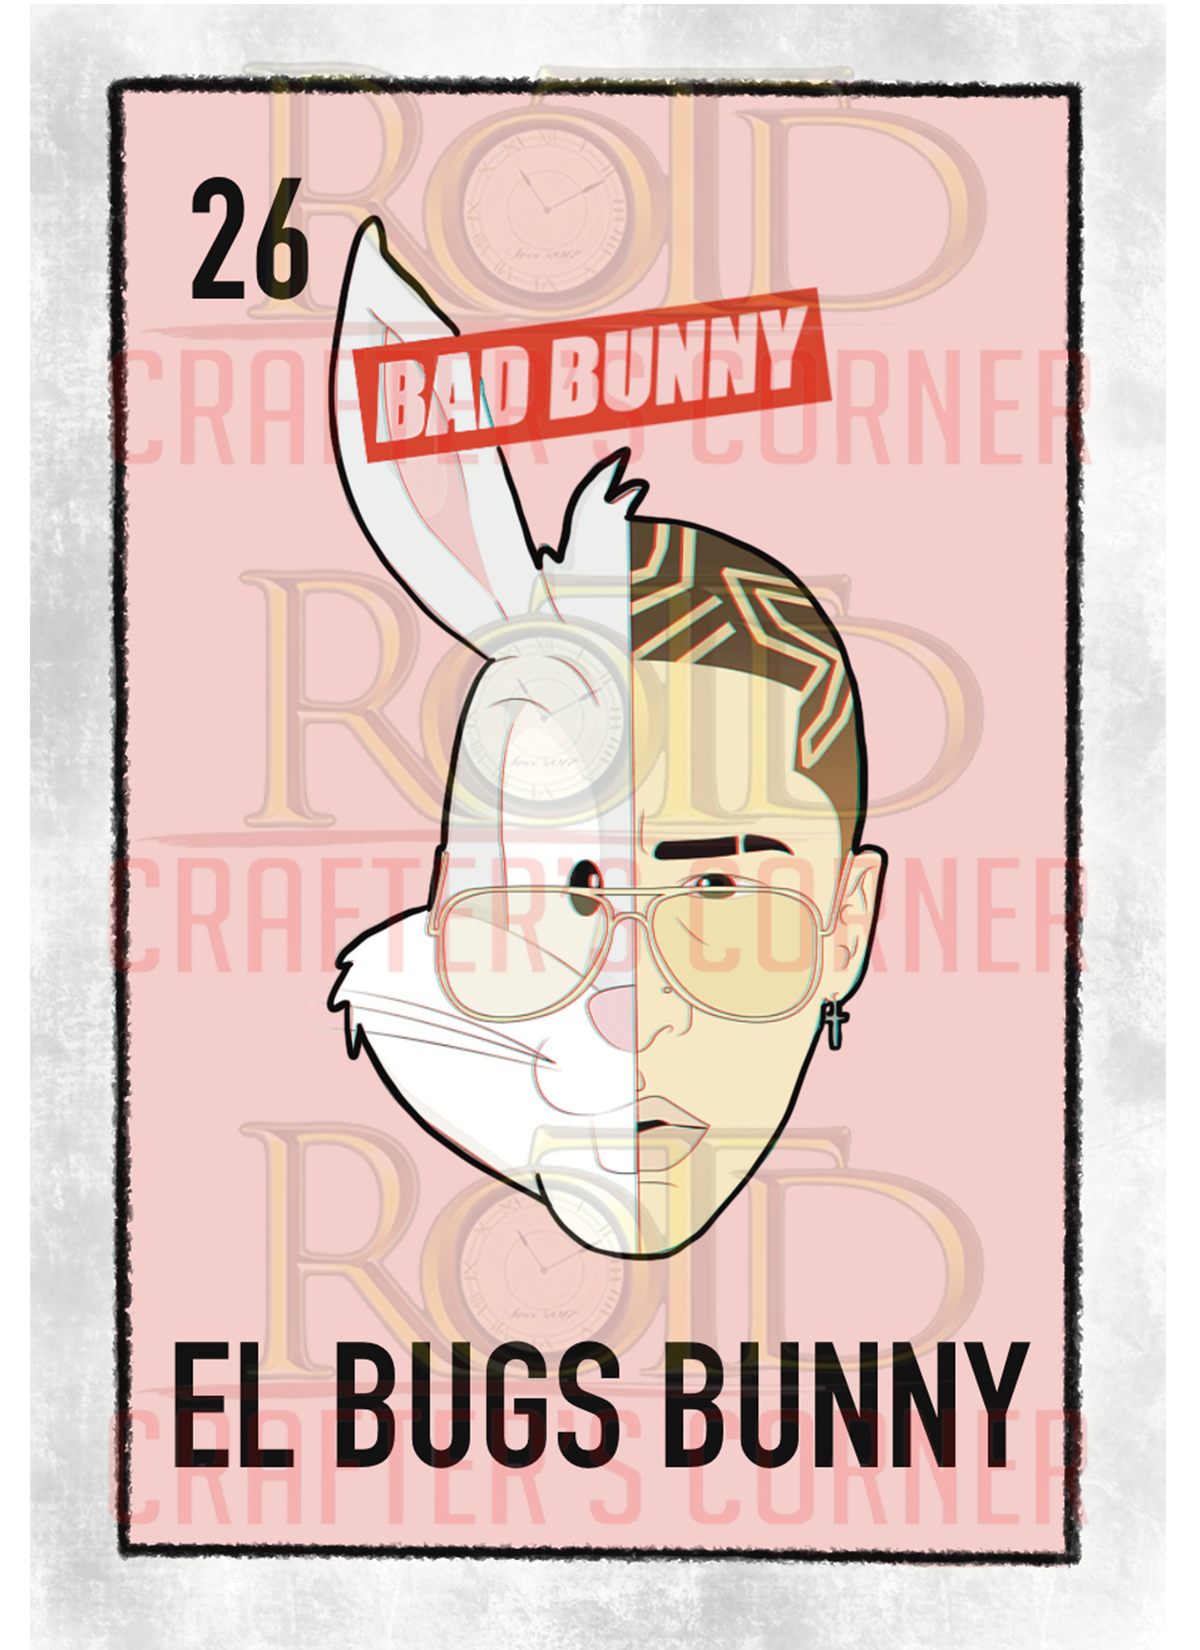 DTF Screen Print Image - 26 El Bugs Bunny